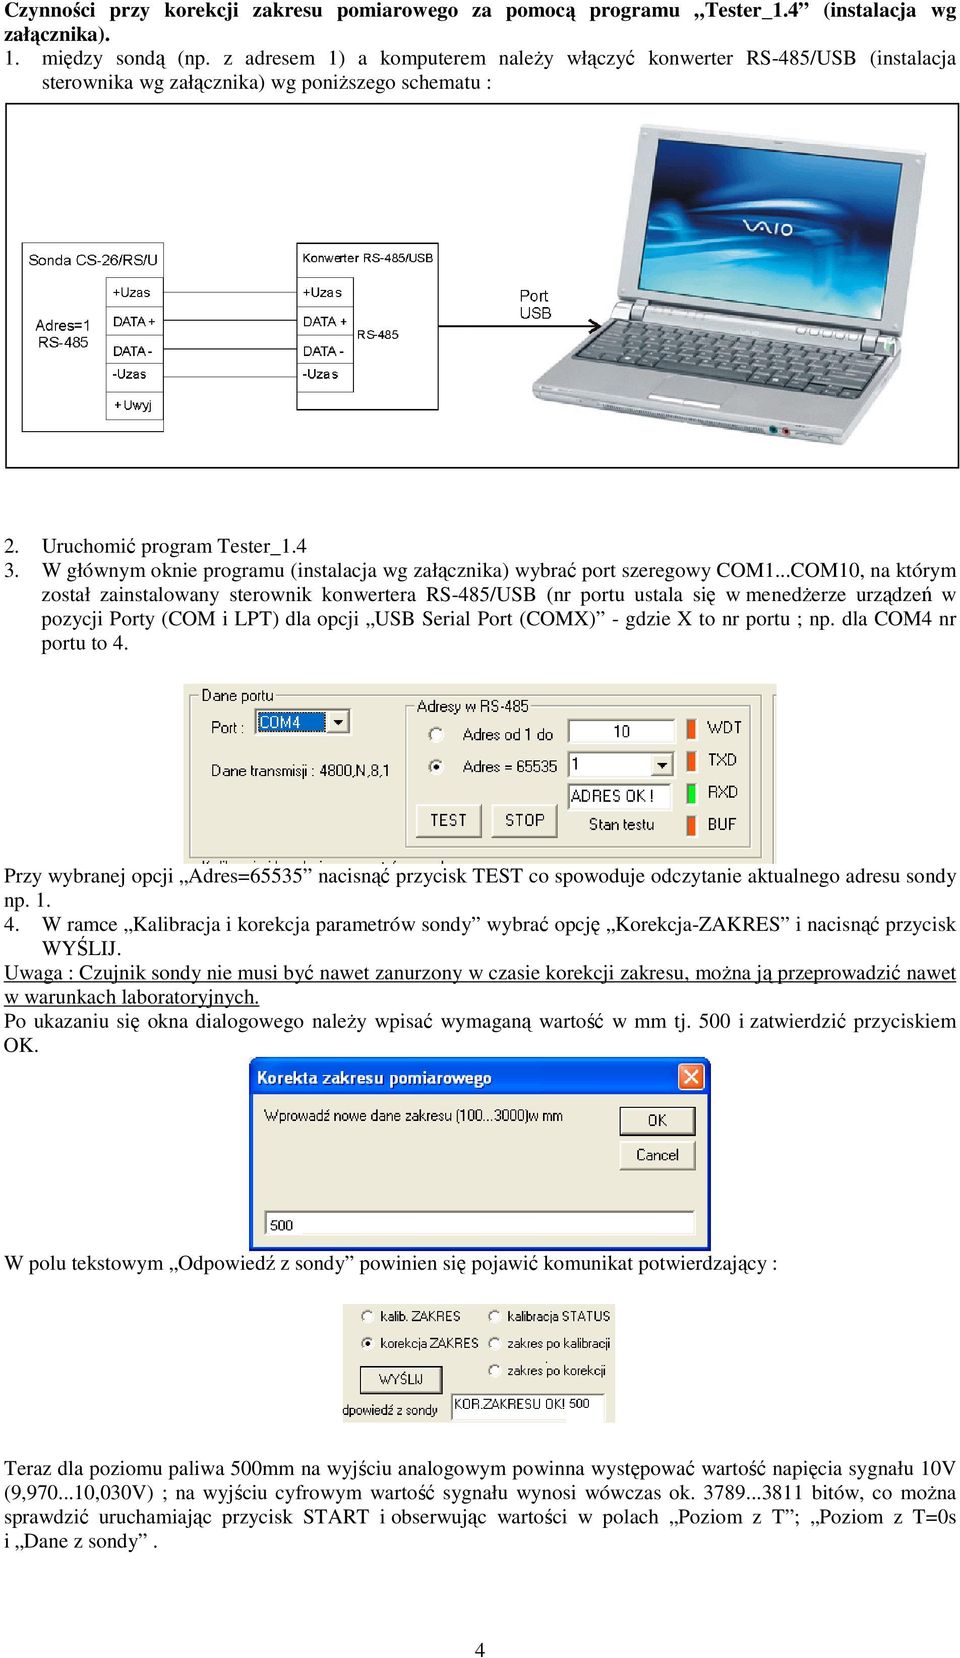 W głównym oknie programu (instalacja wg załącznika) wybrać port szeregowy COM1.